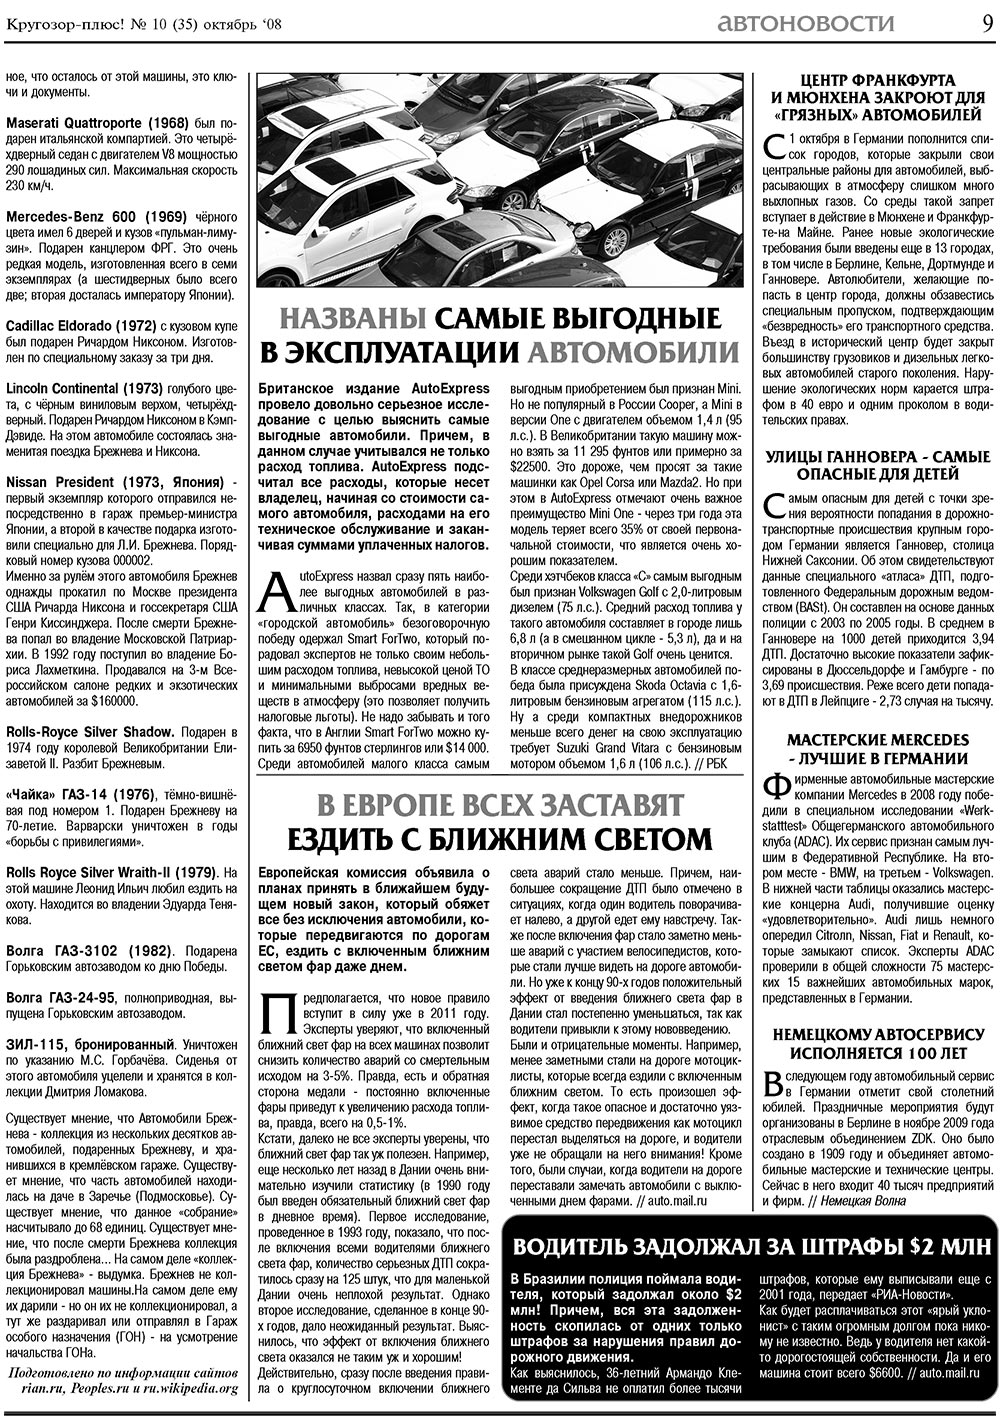 Кругозор плюс!, газета. 2008 №10 стр.9